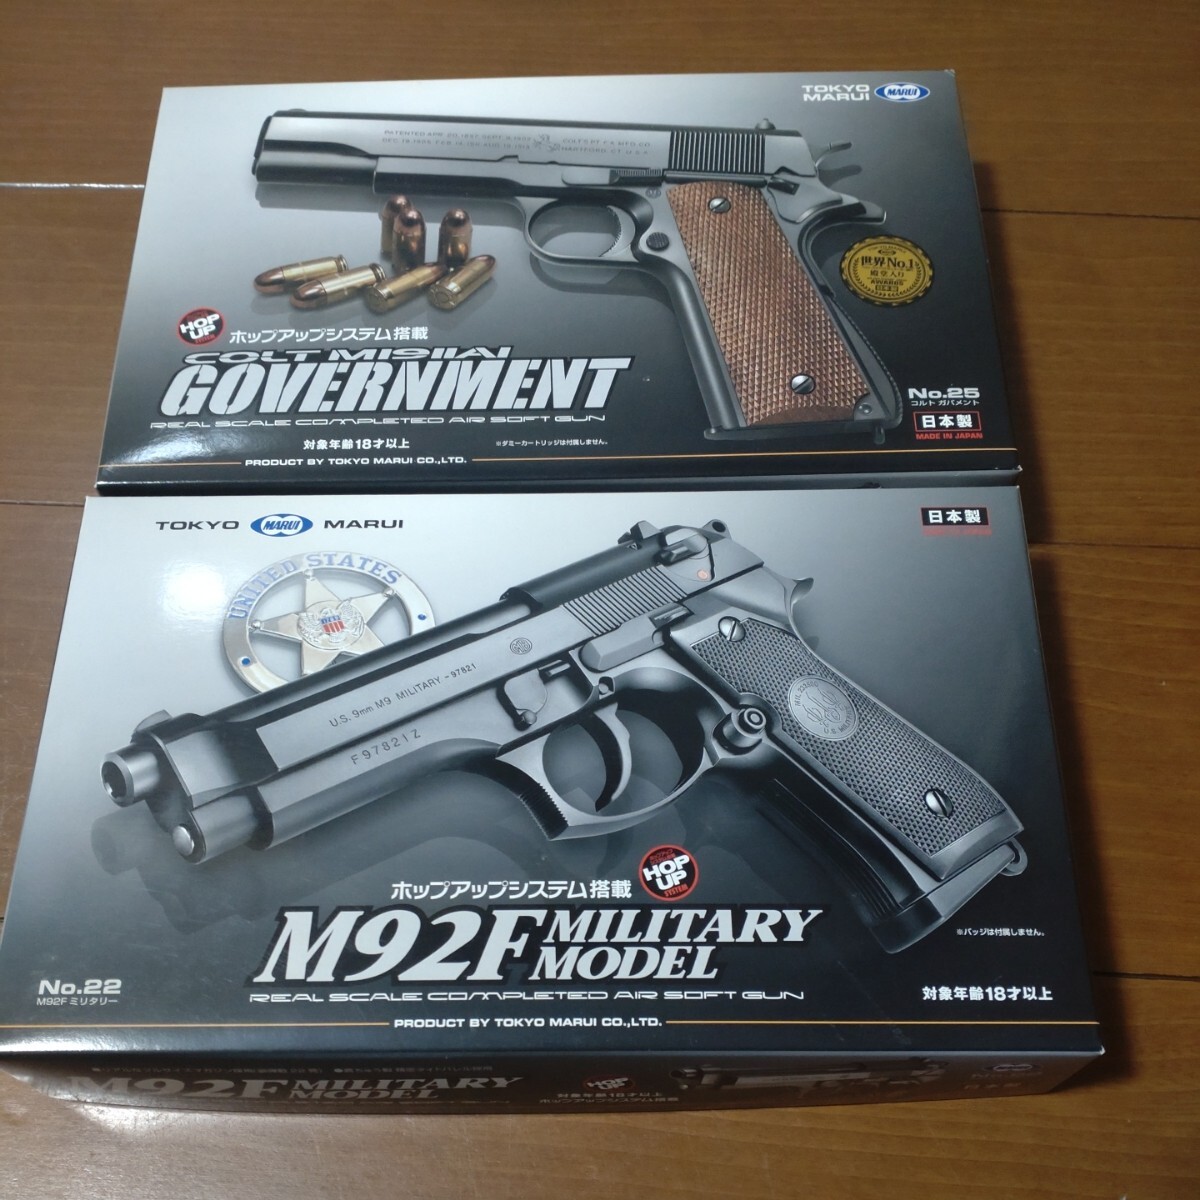 ◎ новый товар ◎  Токио ...　 воздух  ... рука  пистолет  　...M92F　 новый товар  и ... Government     ...  только  неиспользуемый ...　18... модель  　2... комплект    мощный 　